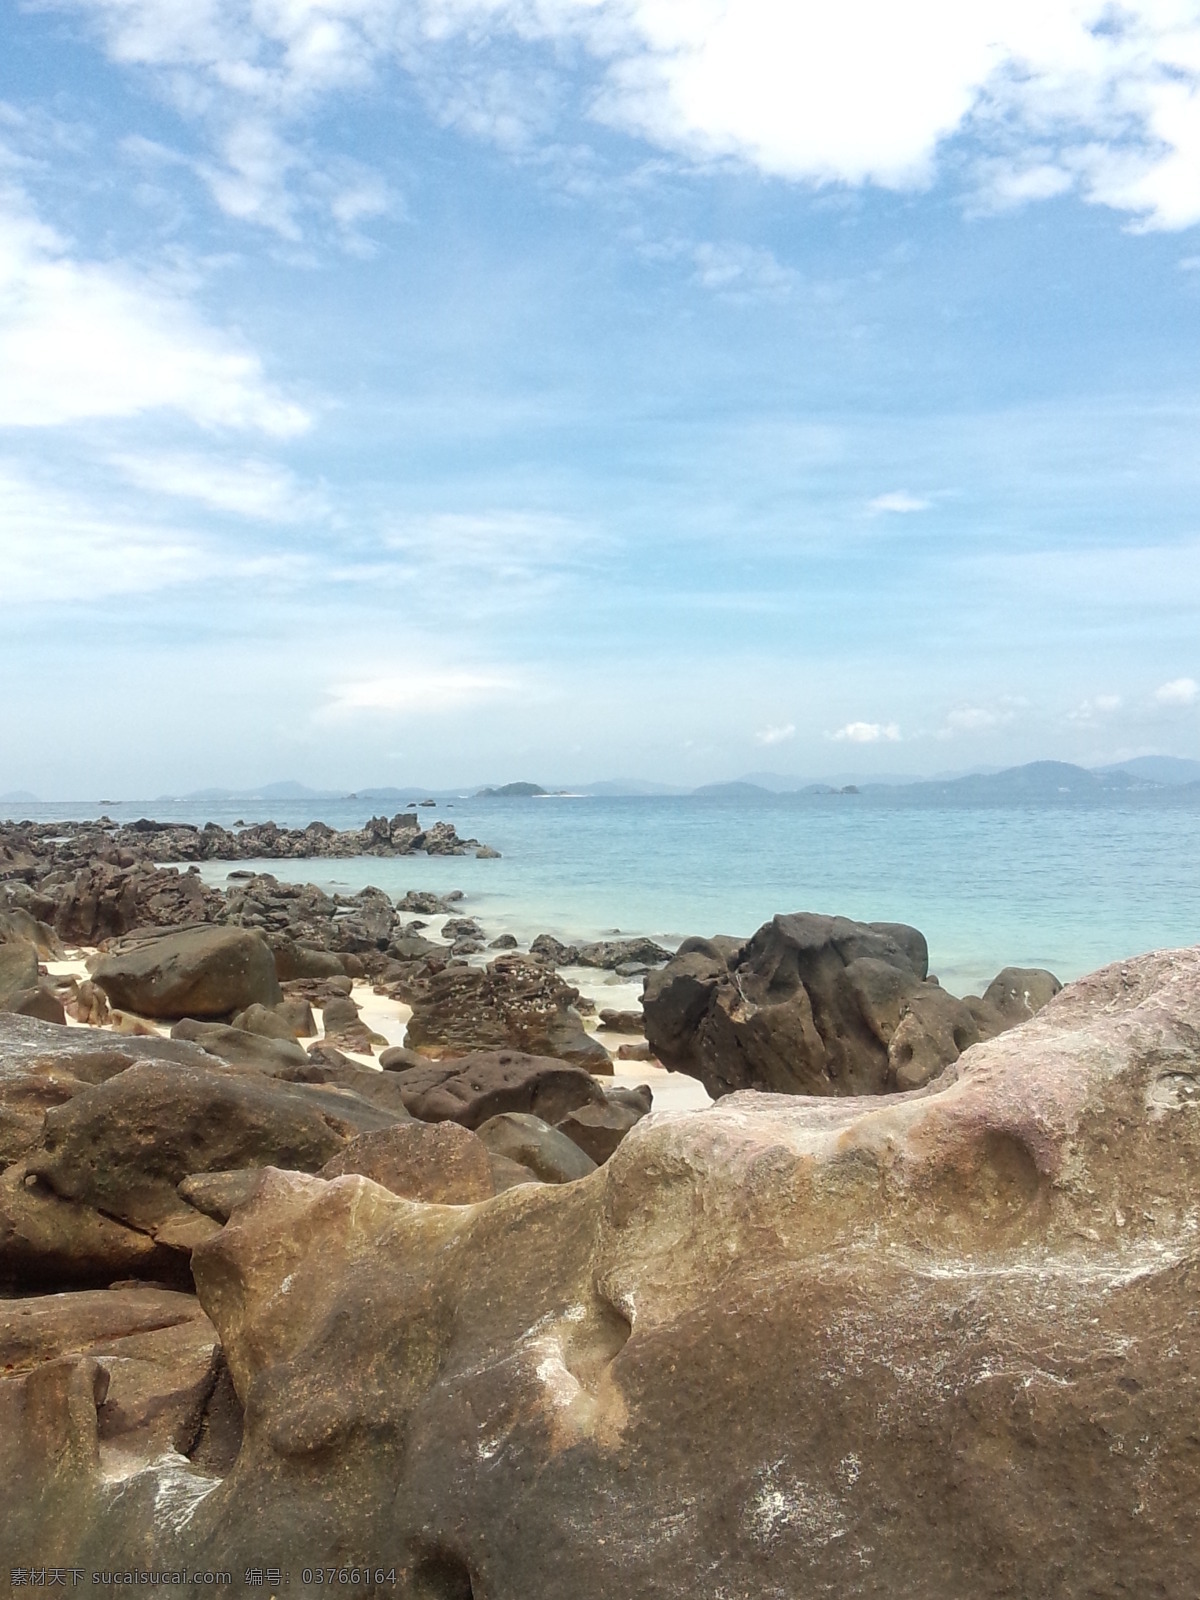 蓝天 白云 大海 石头 海边 水 巨石 泰国 岛 旅游摄影 自然风景